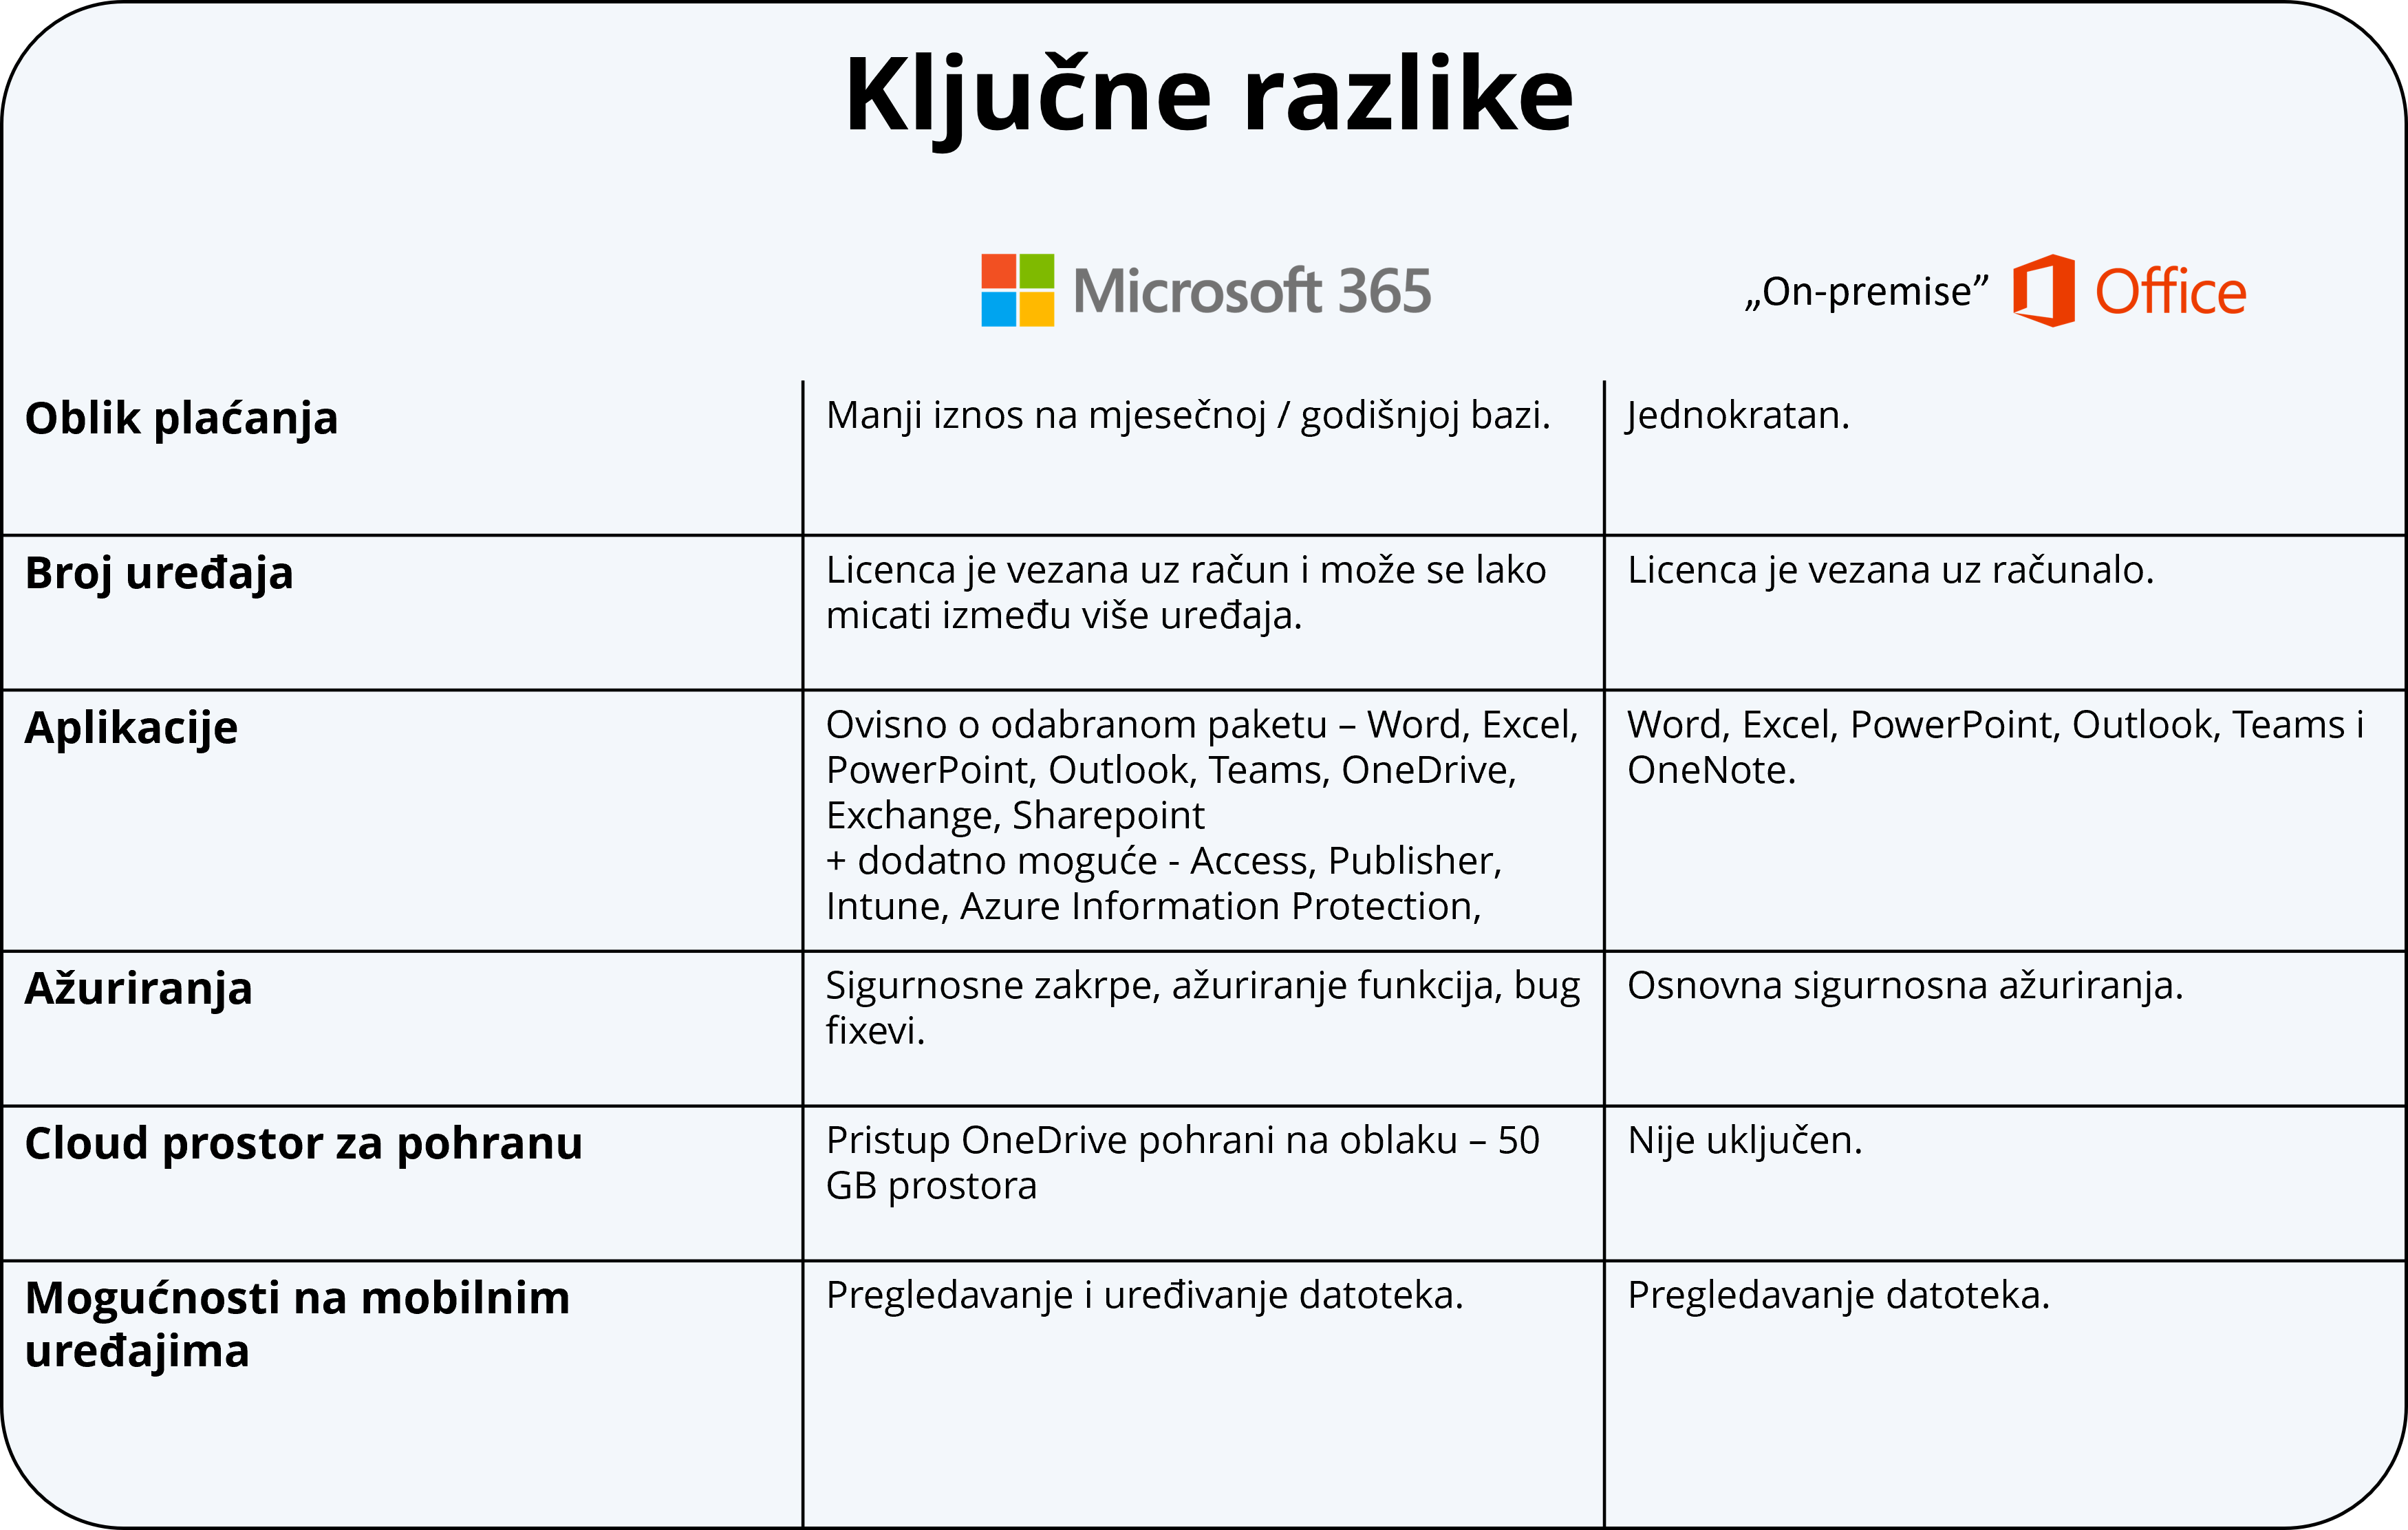 Tablica koja prikazuje ključne razlike između Microsofta 365 i "On-premise" Office paketa.